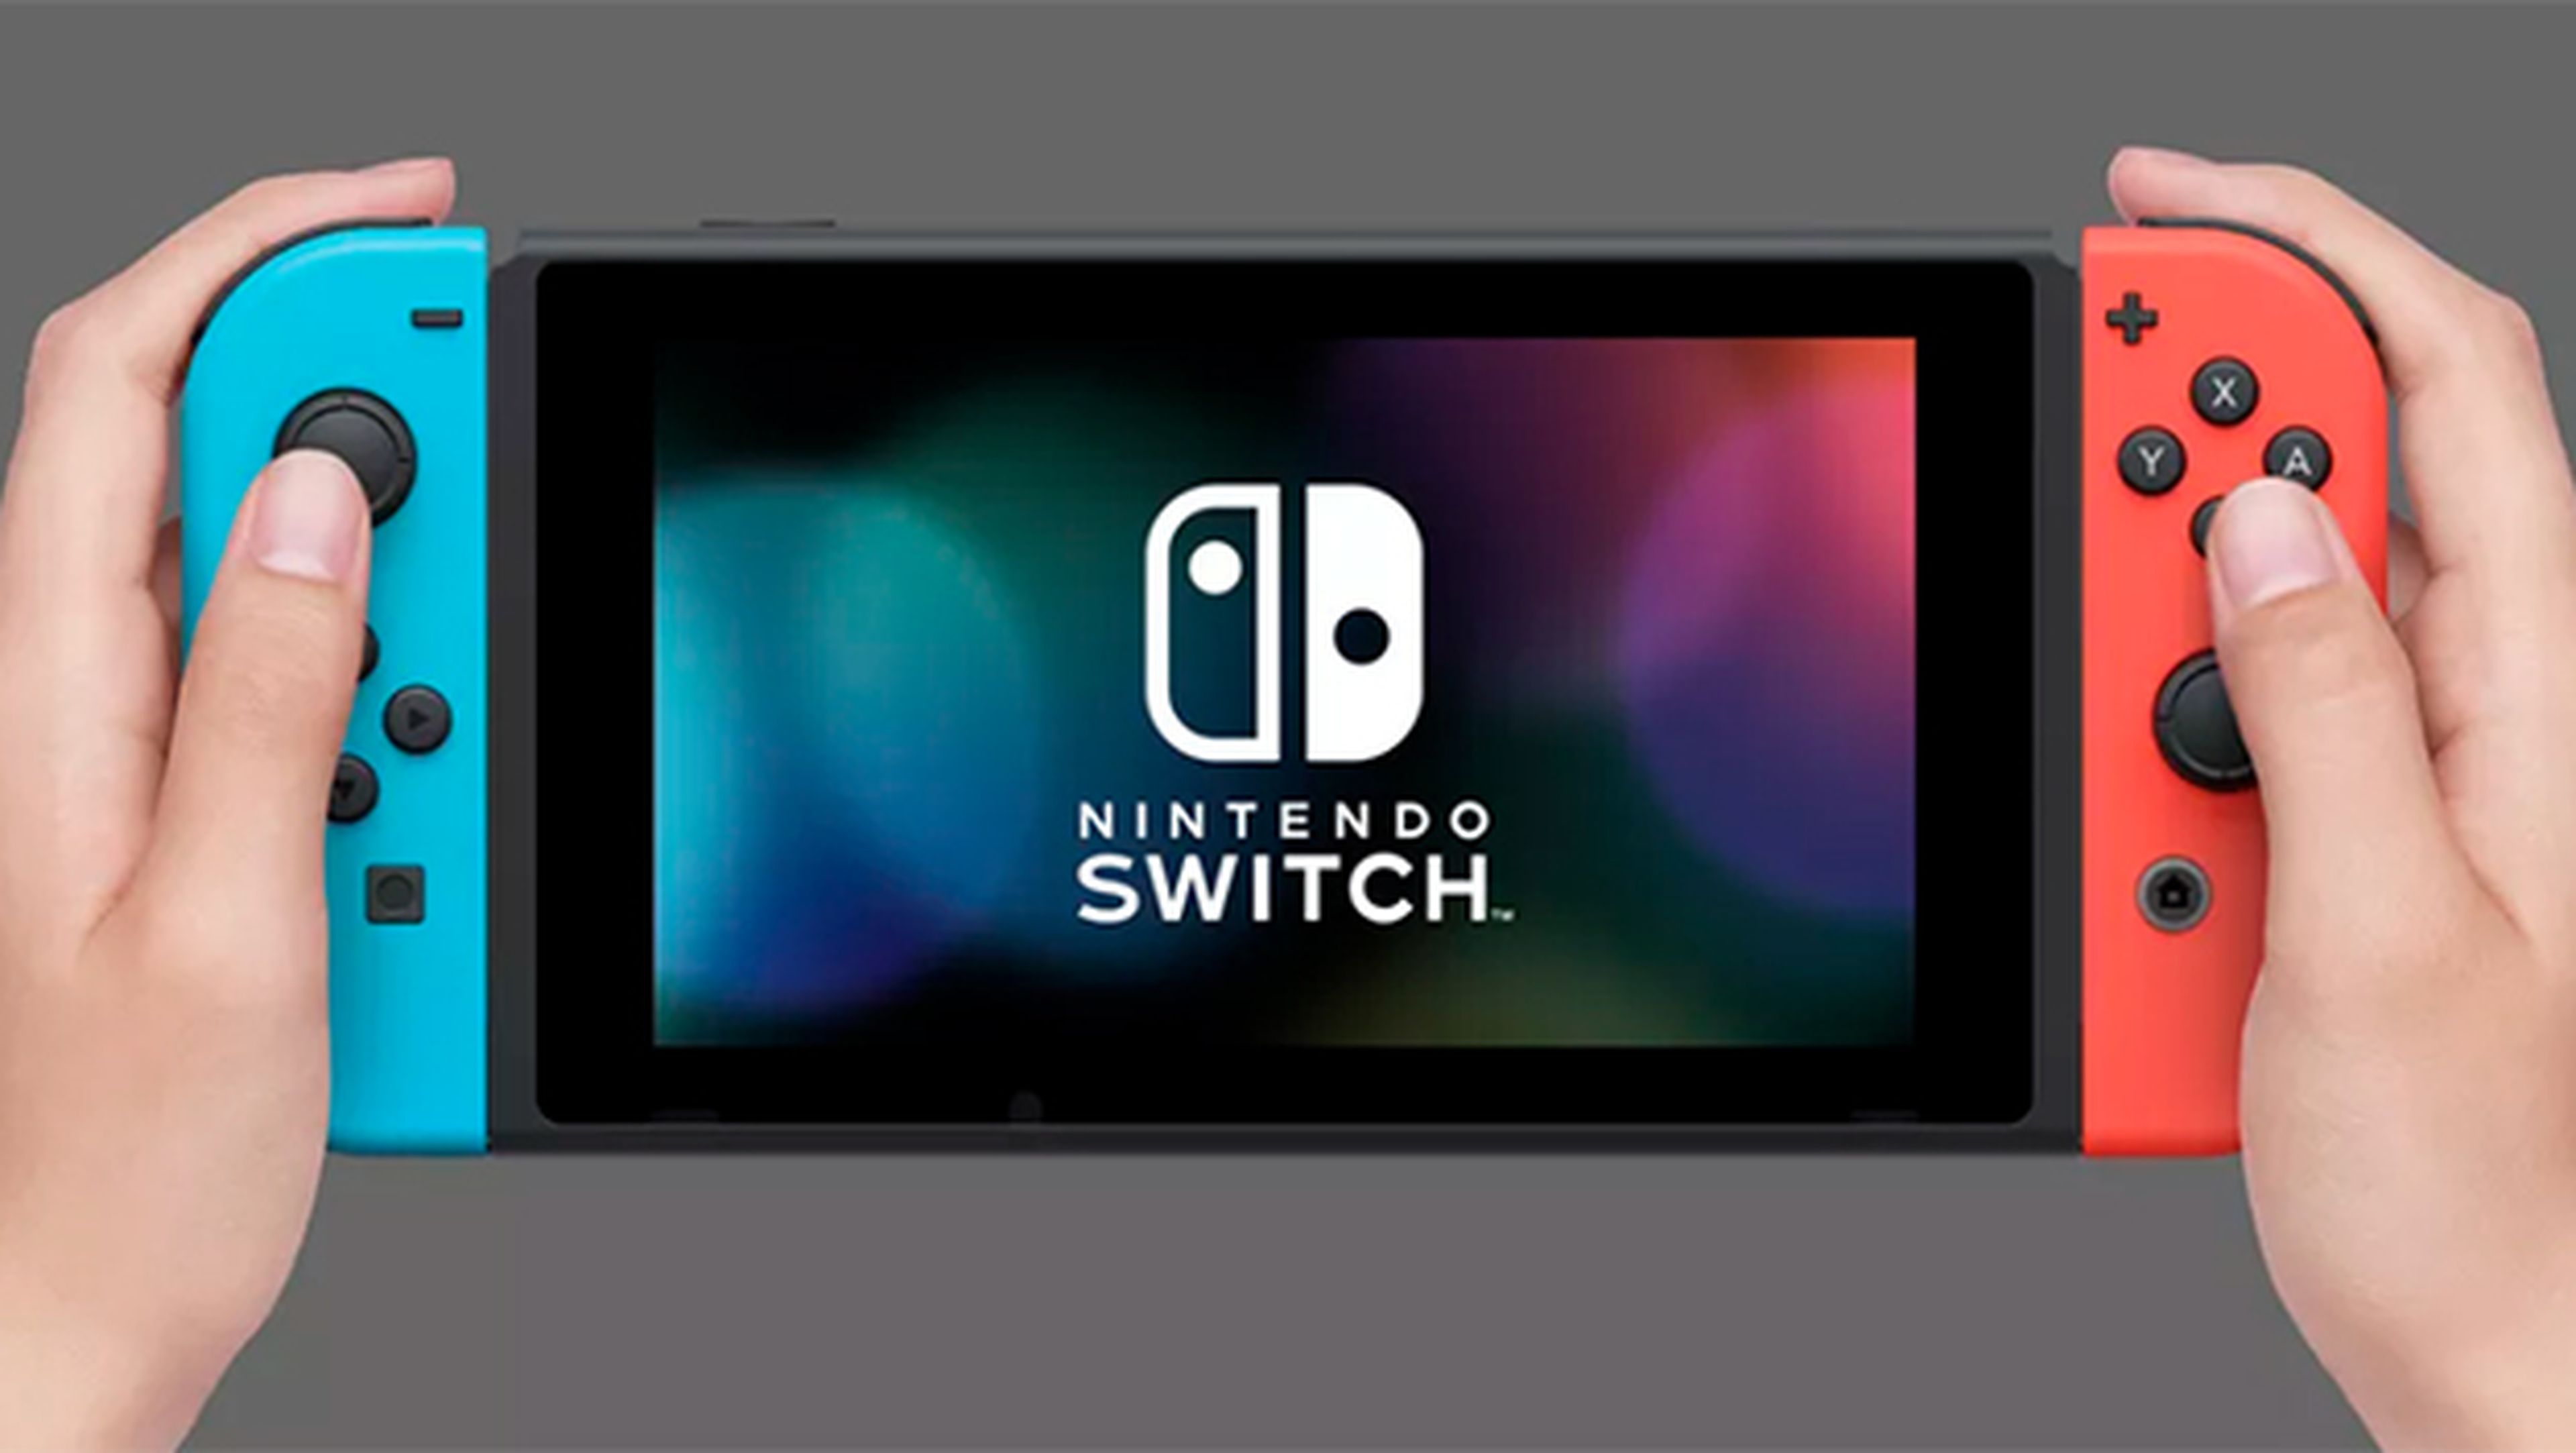 Nintendo Switch a fondo: características precio y juegos de lanzamiento | Computer Hoy